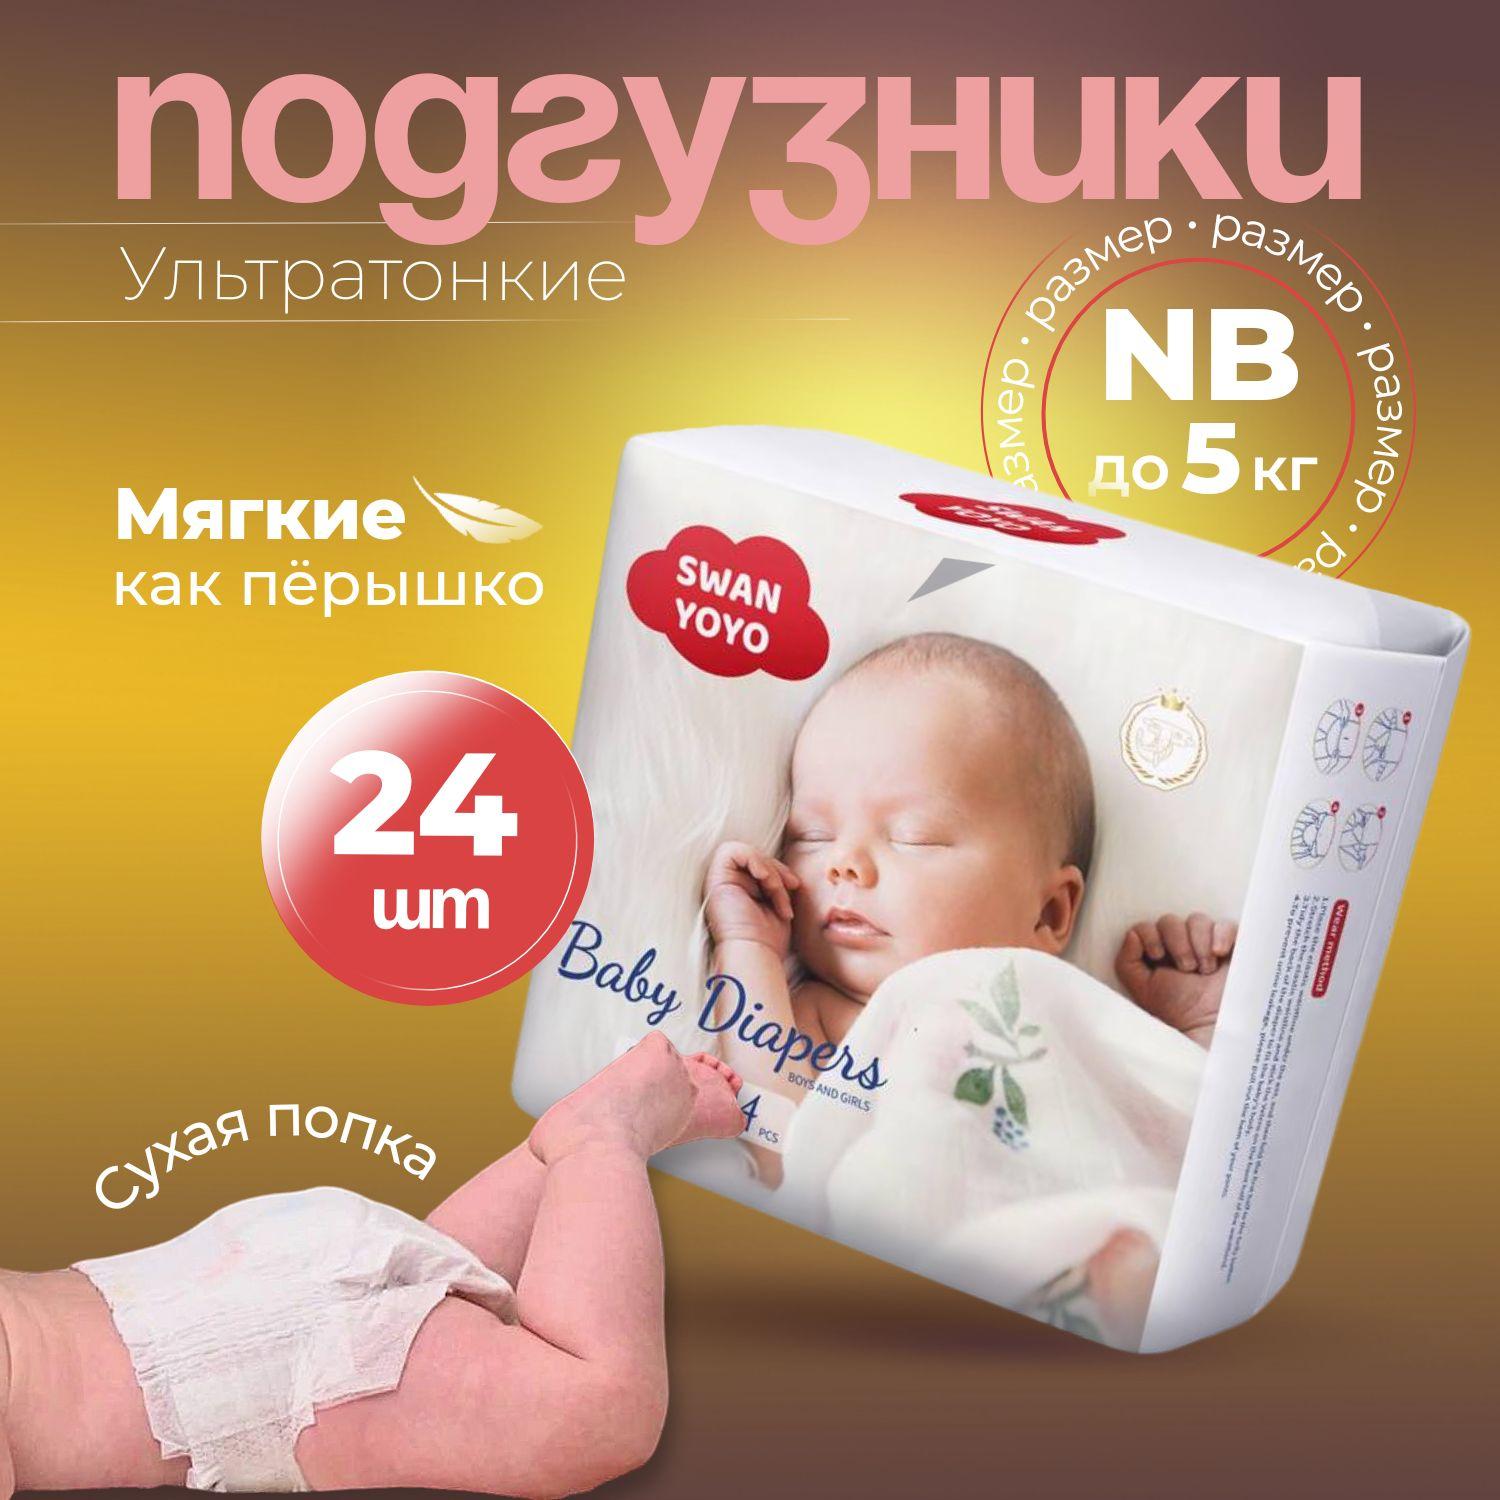 Подгузники для новорожденных ультратонкие SWAN YOYO, размер 1, NB (до 5 кг), 24 шт